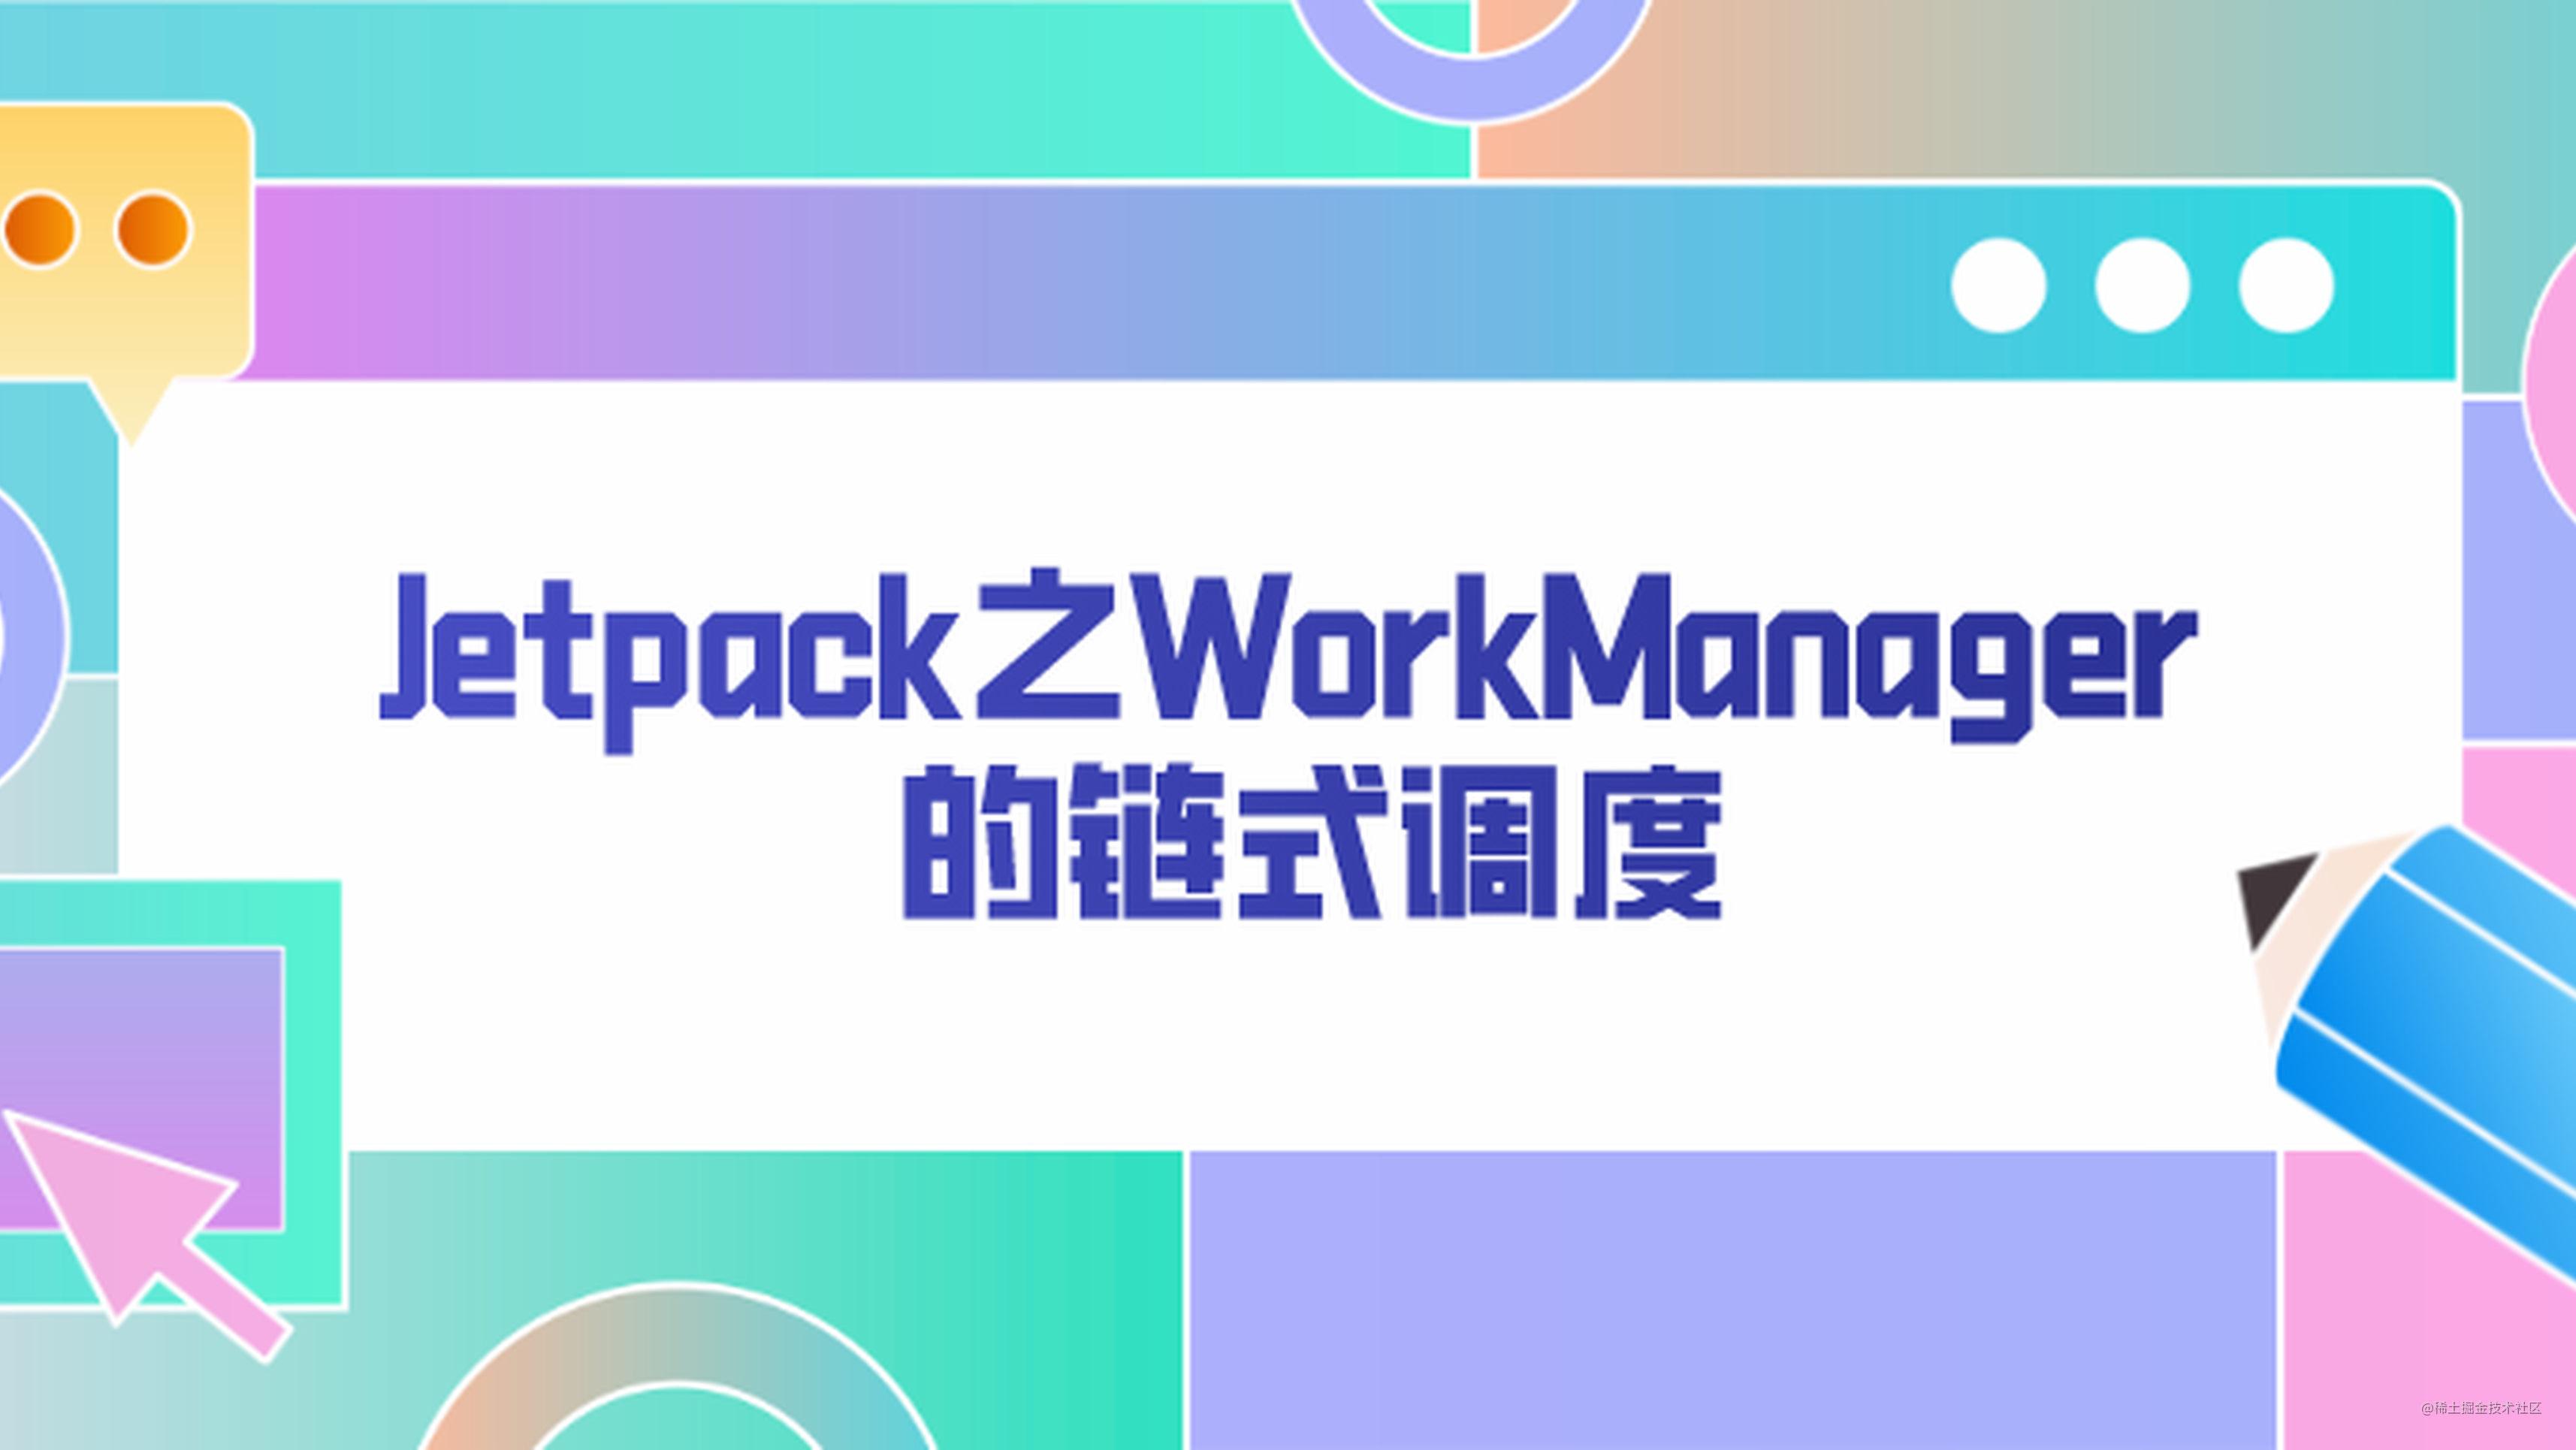 Jetpack之WorkManager 的链式调度